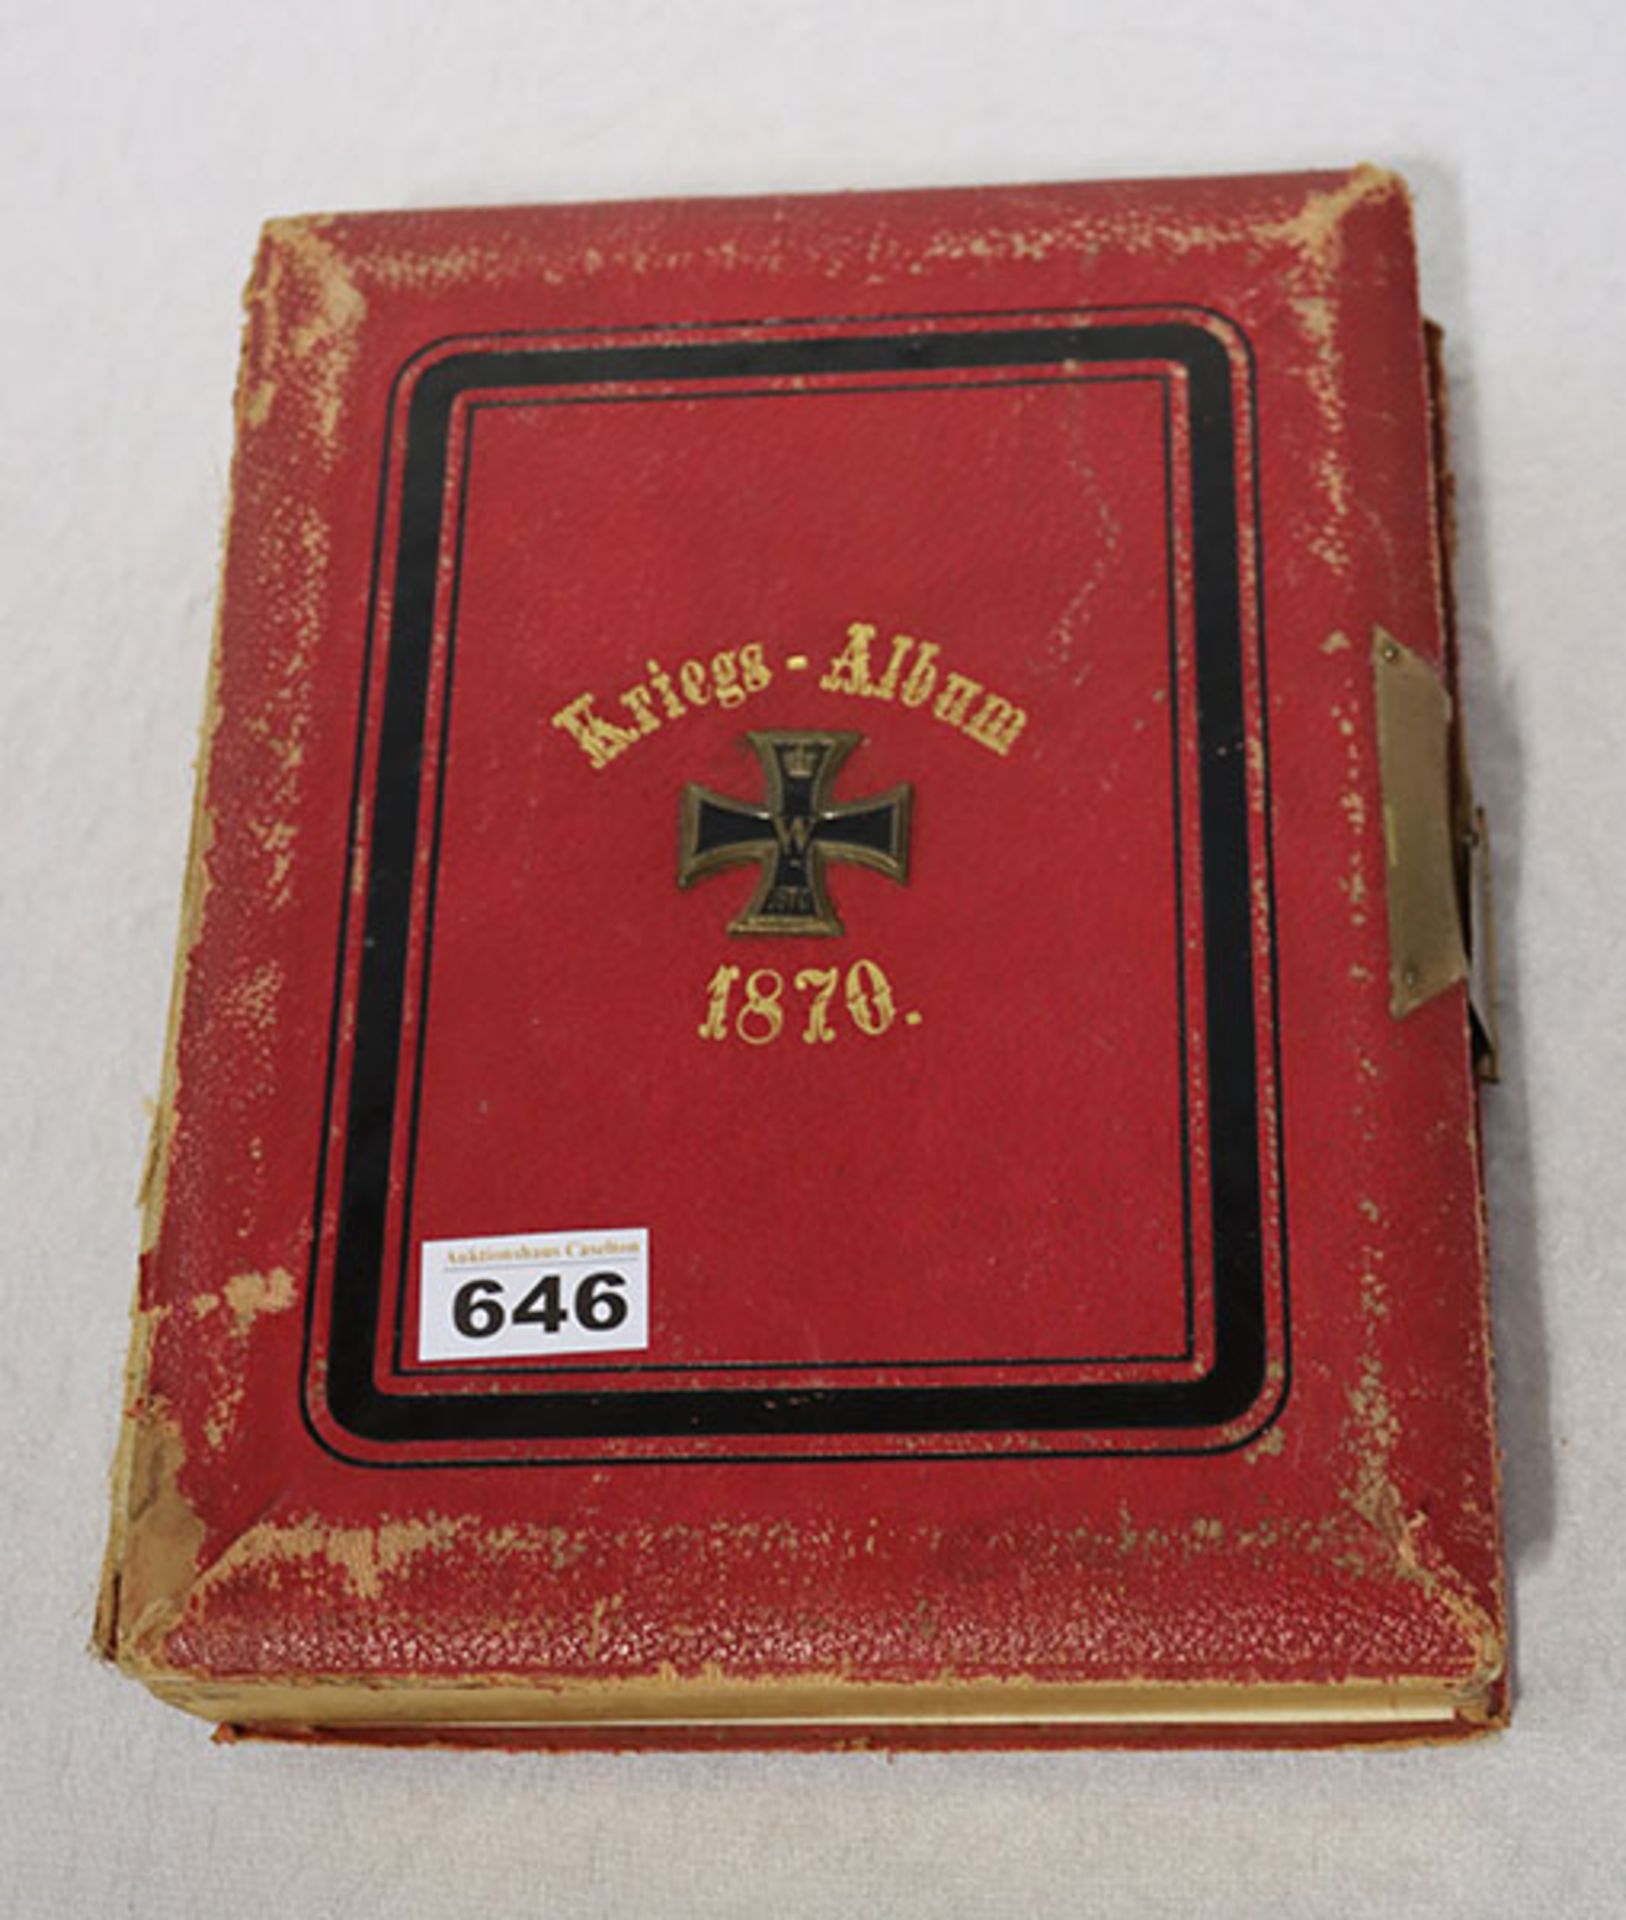 Kriegs-Album 1870, mit aufgelegtem Eisernen Kreuz, stark beschädigt